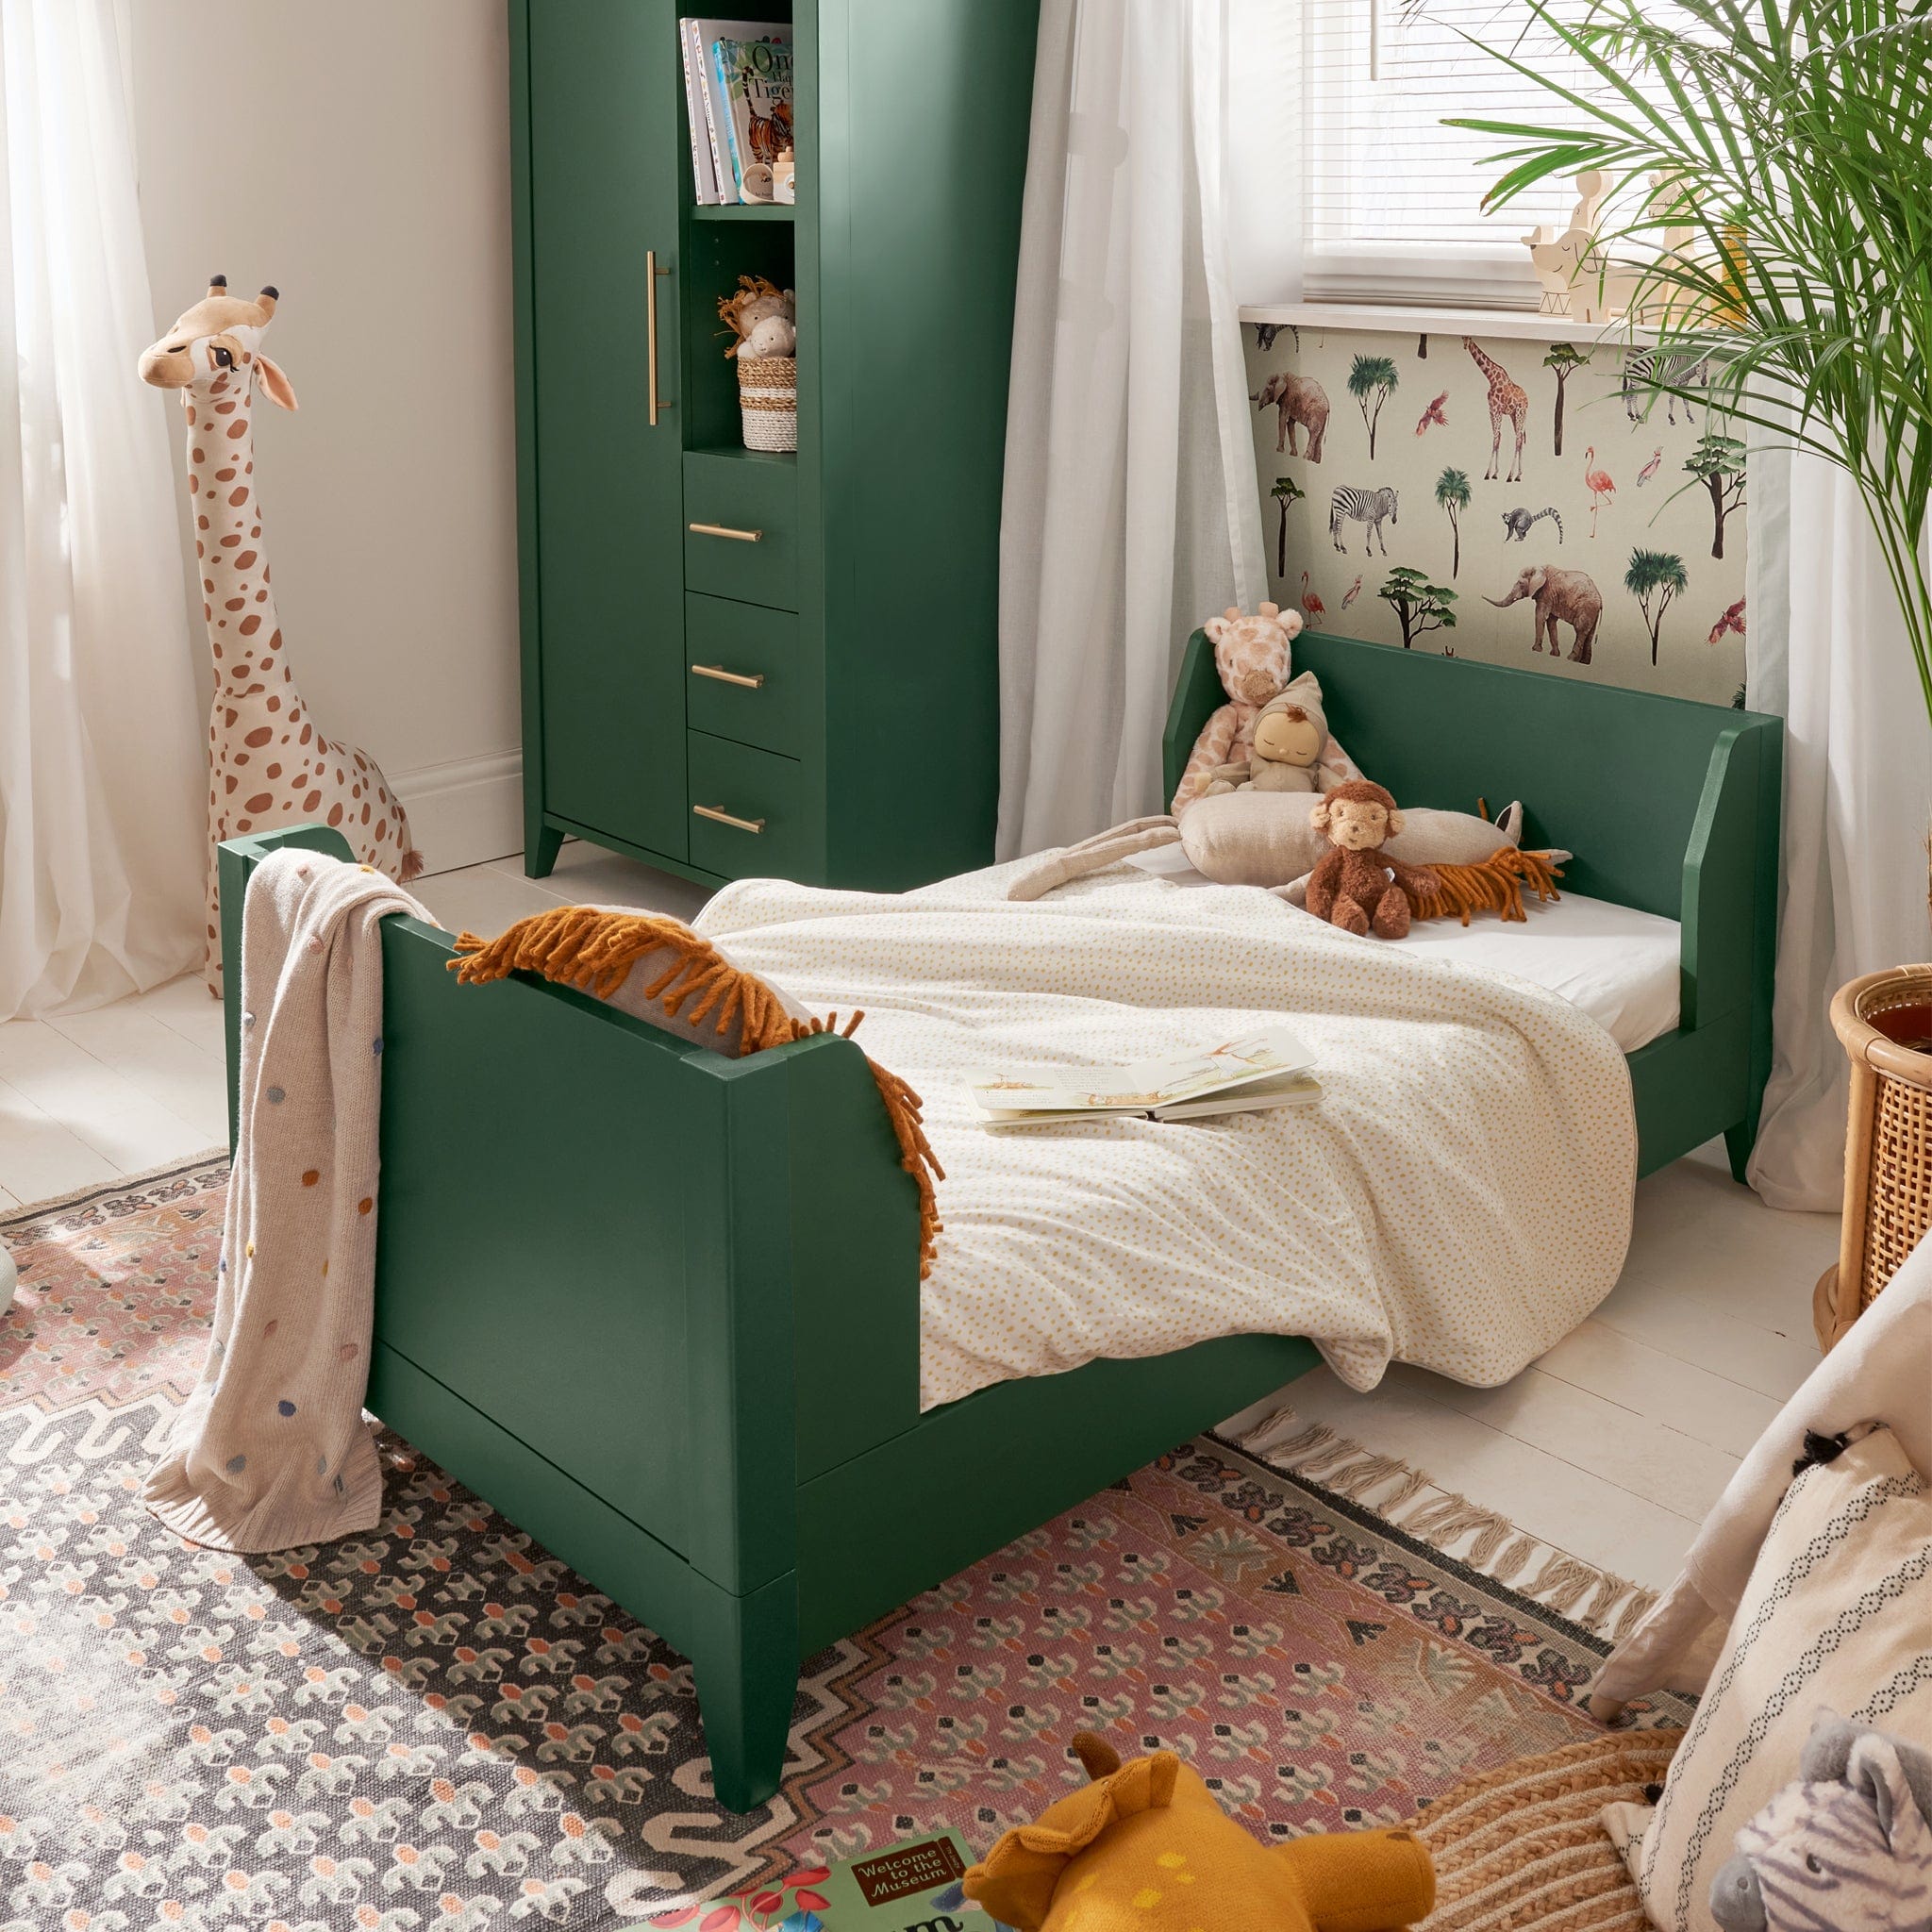 Mamas & Papas cot bed room sets Mamas & Papas Melfi 3 Piece Cotbed Range Green